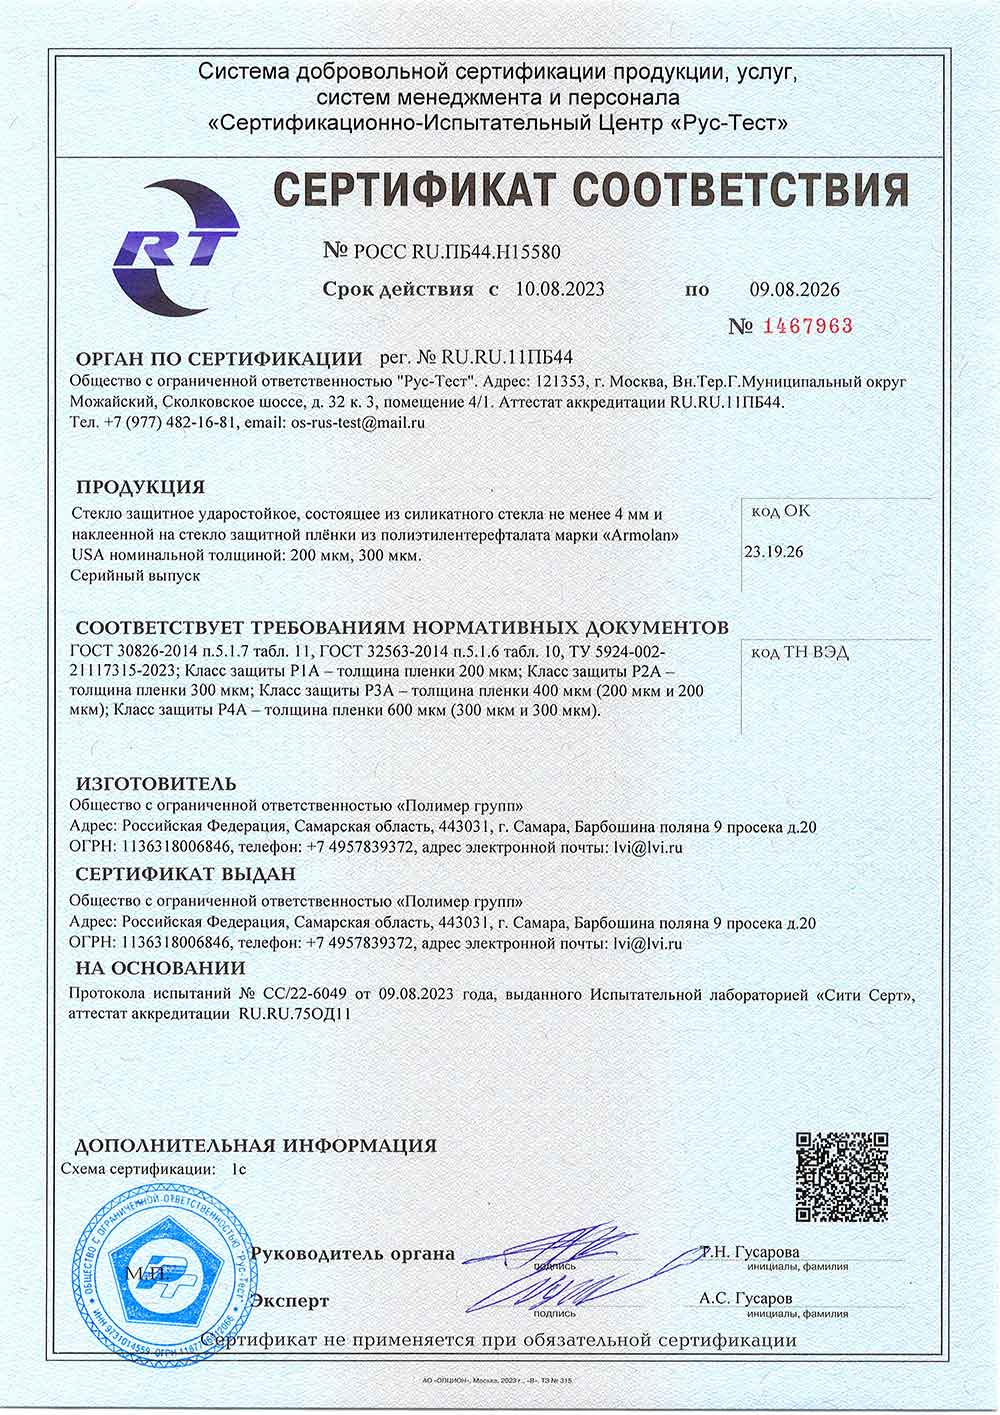 Armolan (LVI), сертификат соответствия, 09.08.2026